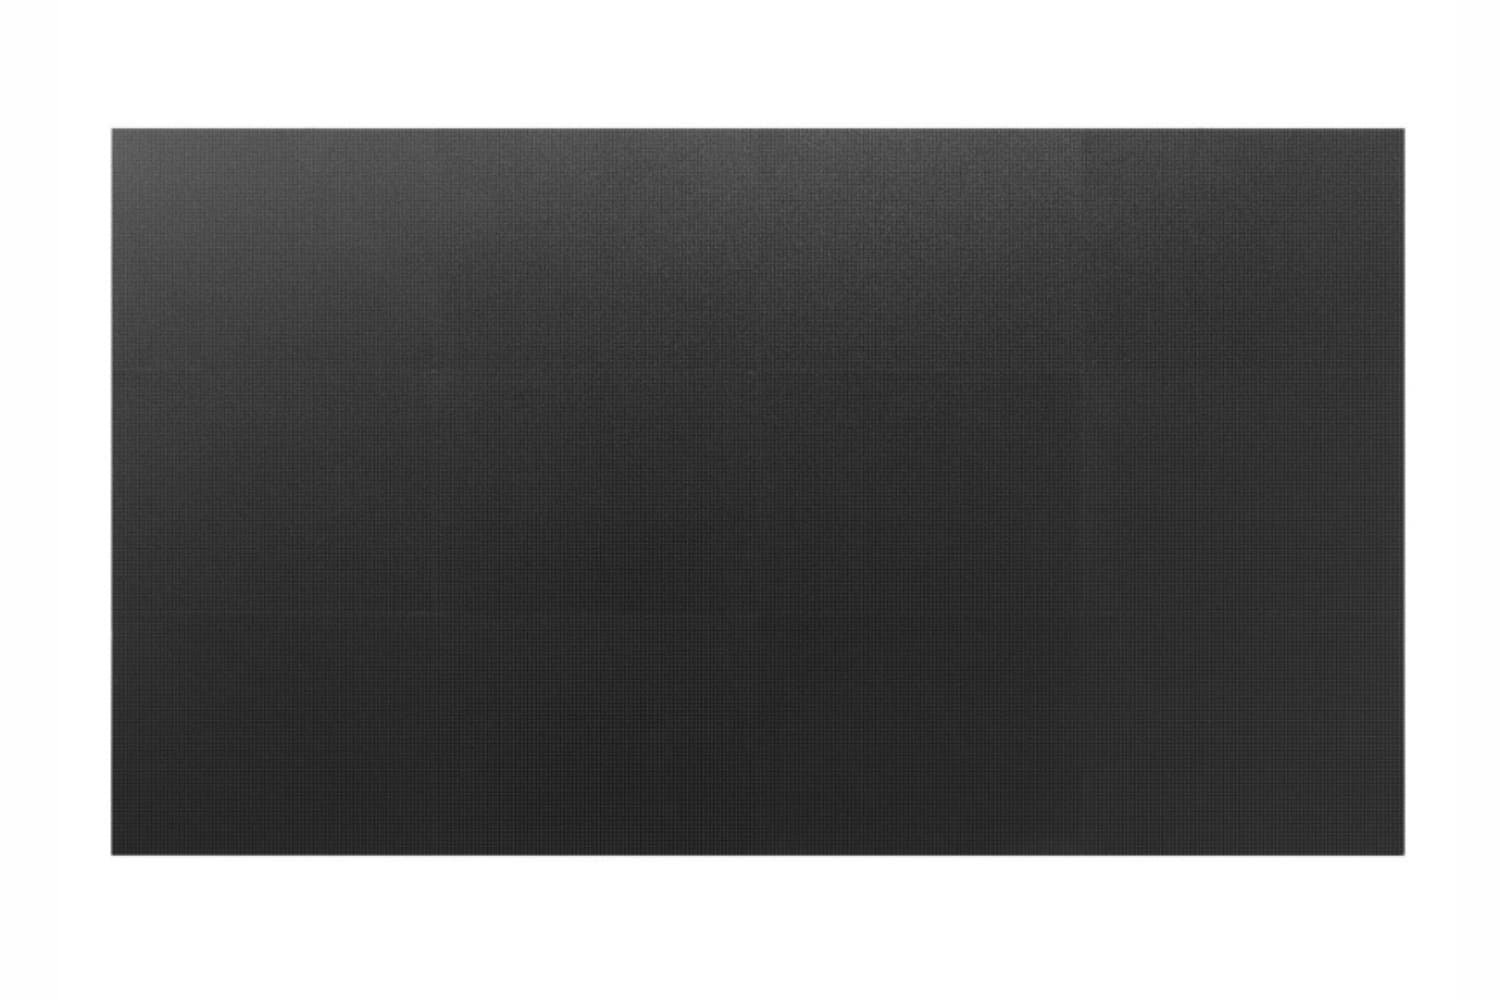  Фото светодиодный экран 1.9мм eliteboard dcmu1019 - фото 2